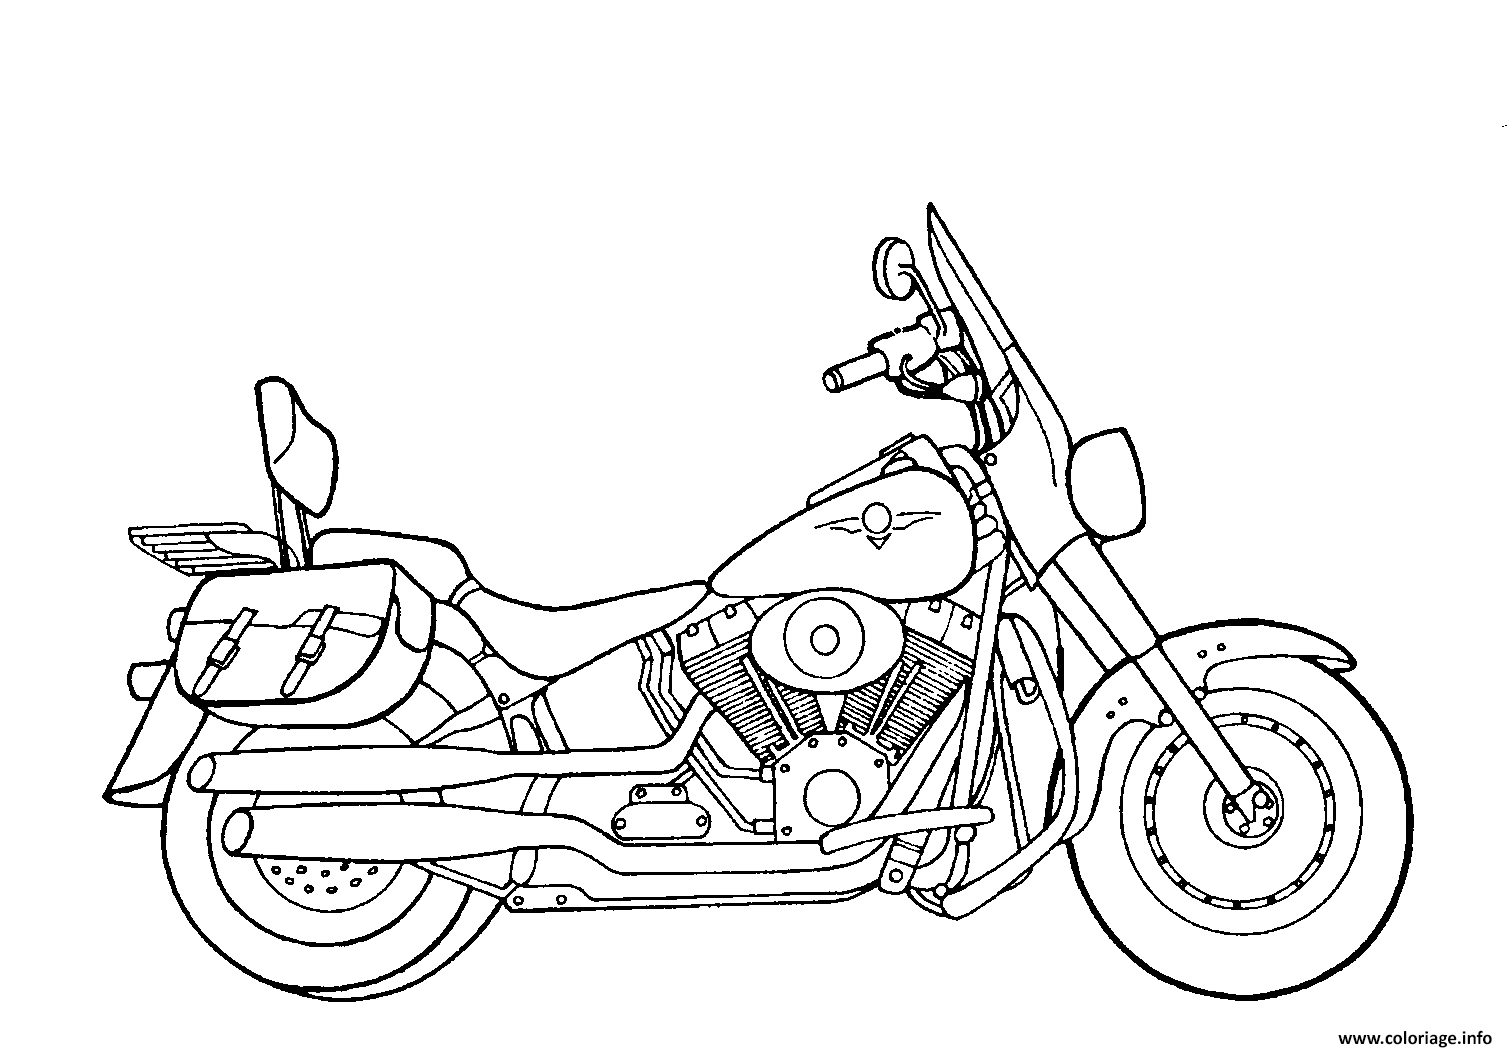 Dessin motocyclette 11 Coloriage Gratuit à Imprimer